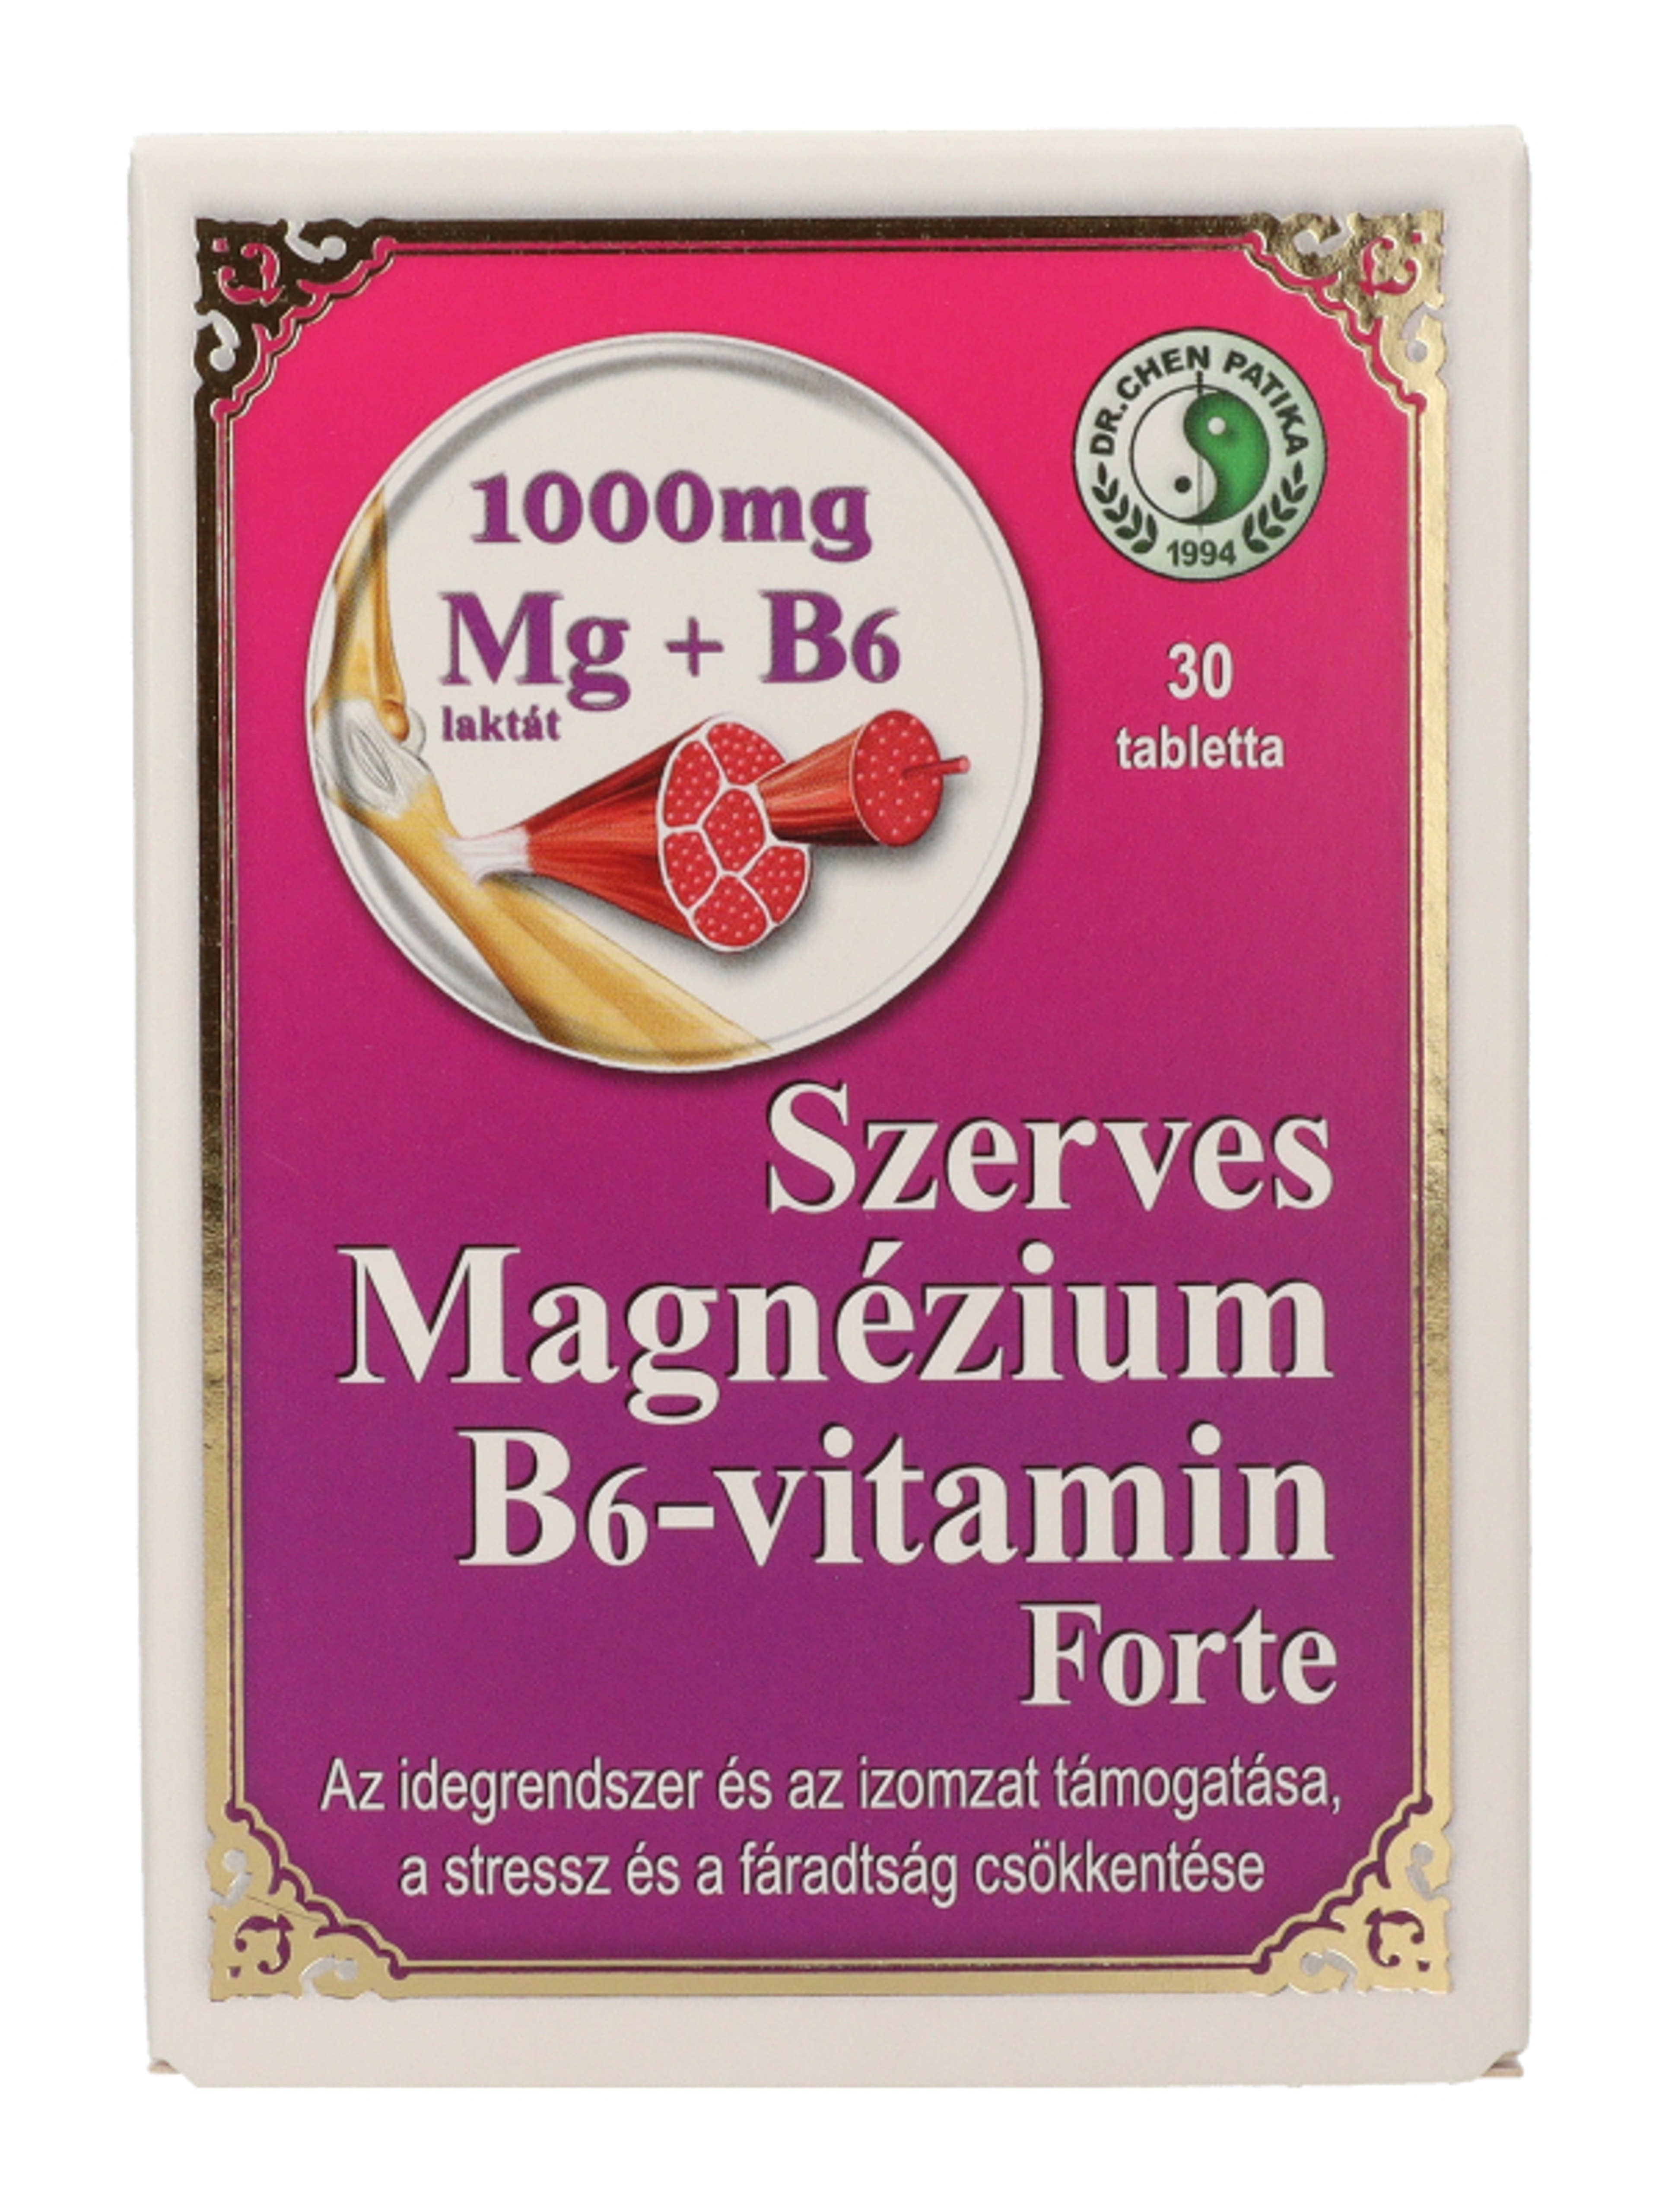 Dr.Chen Patika Magnézium+ B6 Vitamin Forte Tabletta - 30 db-2